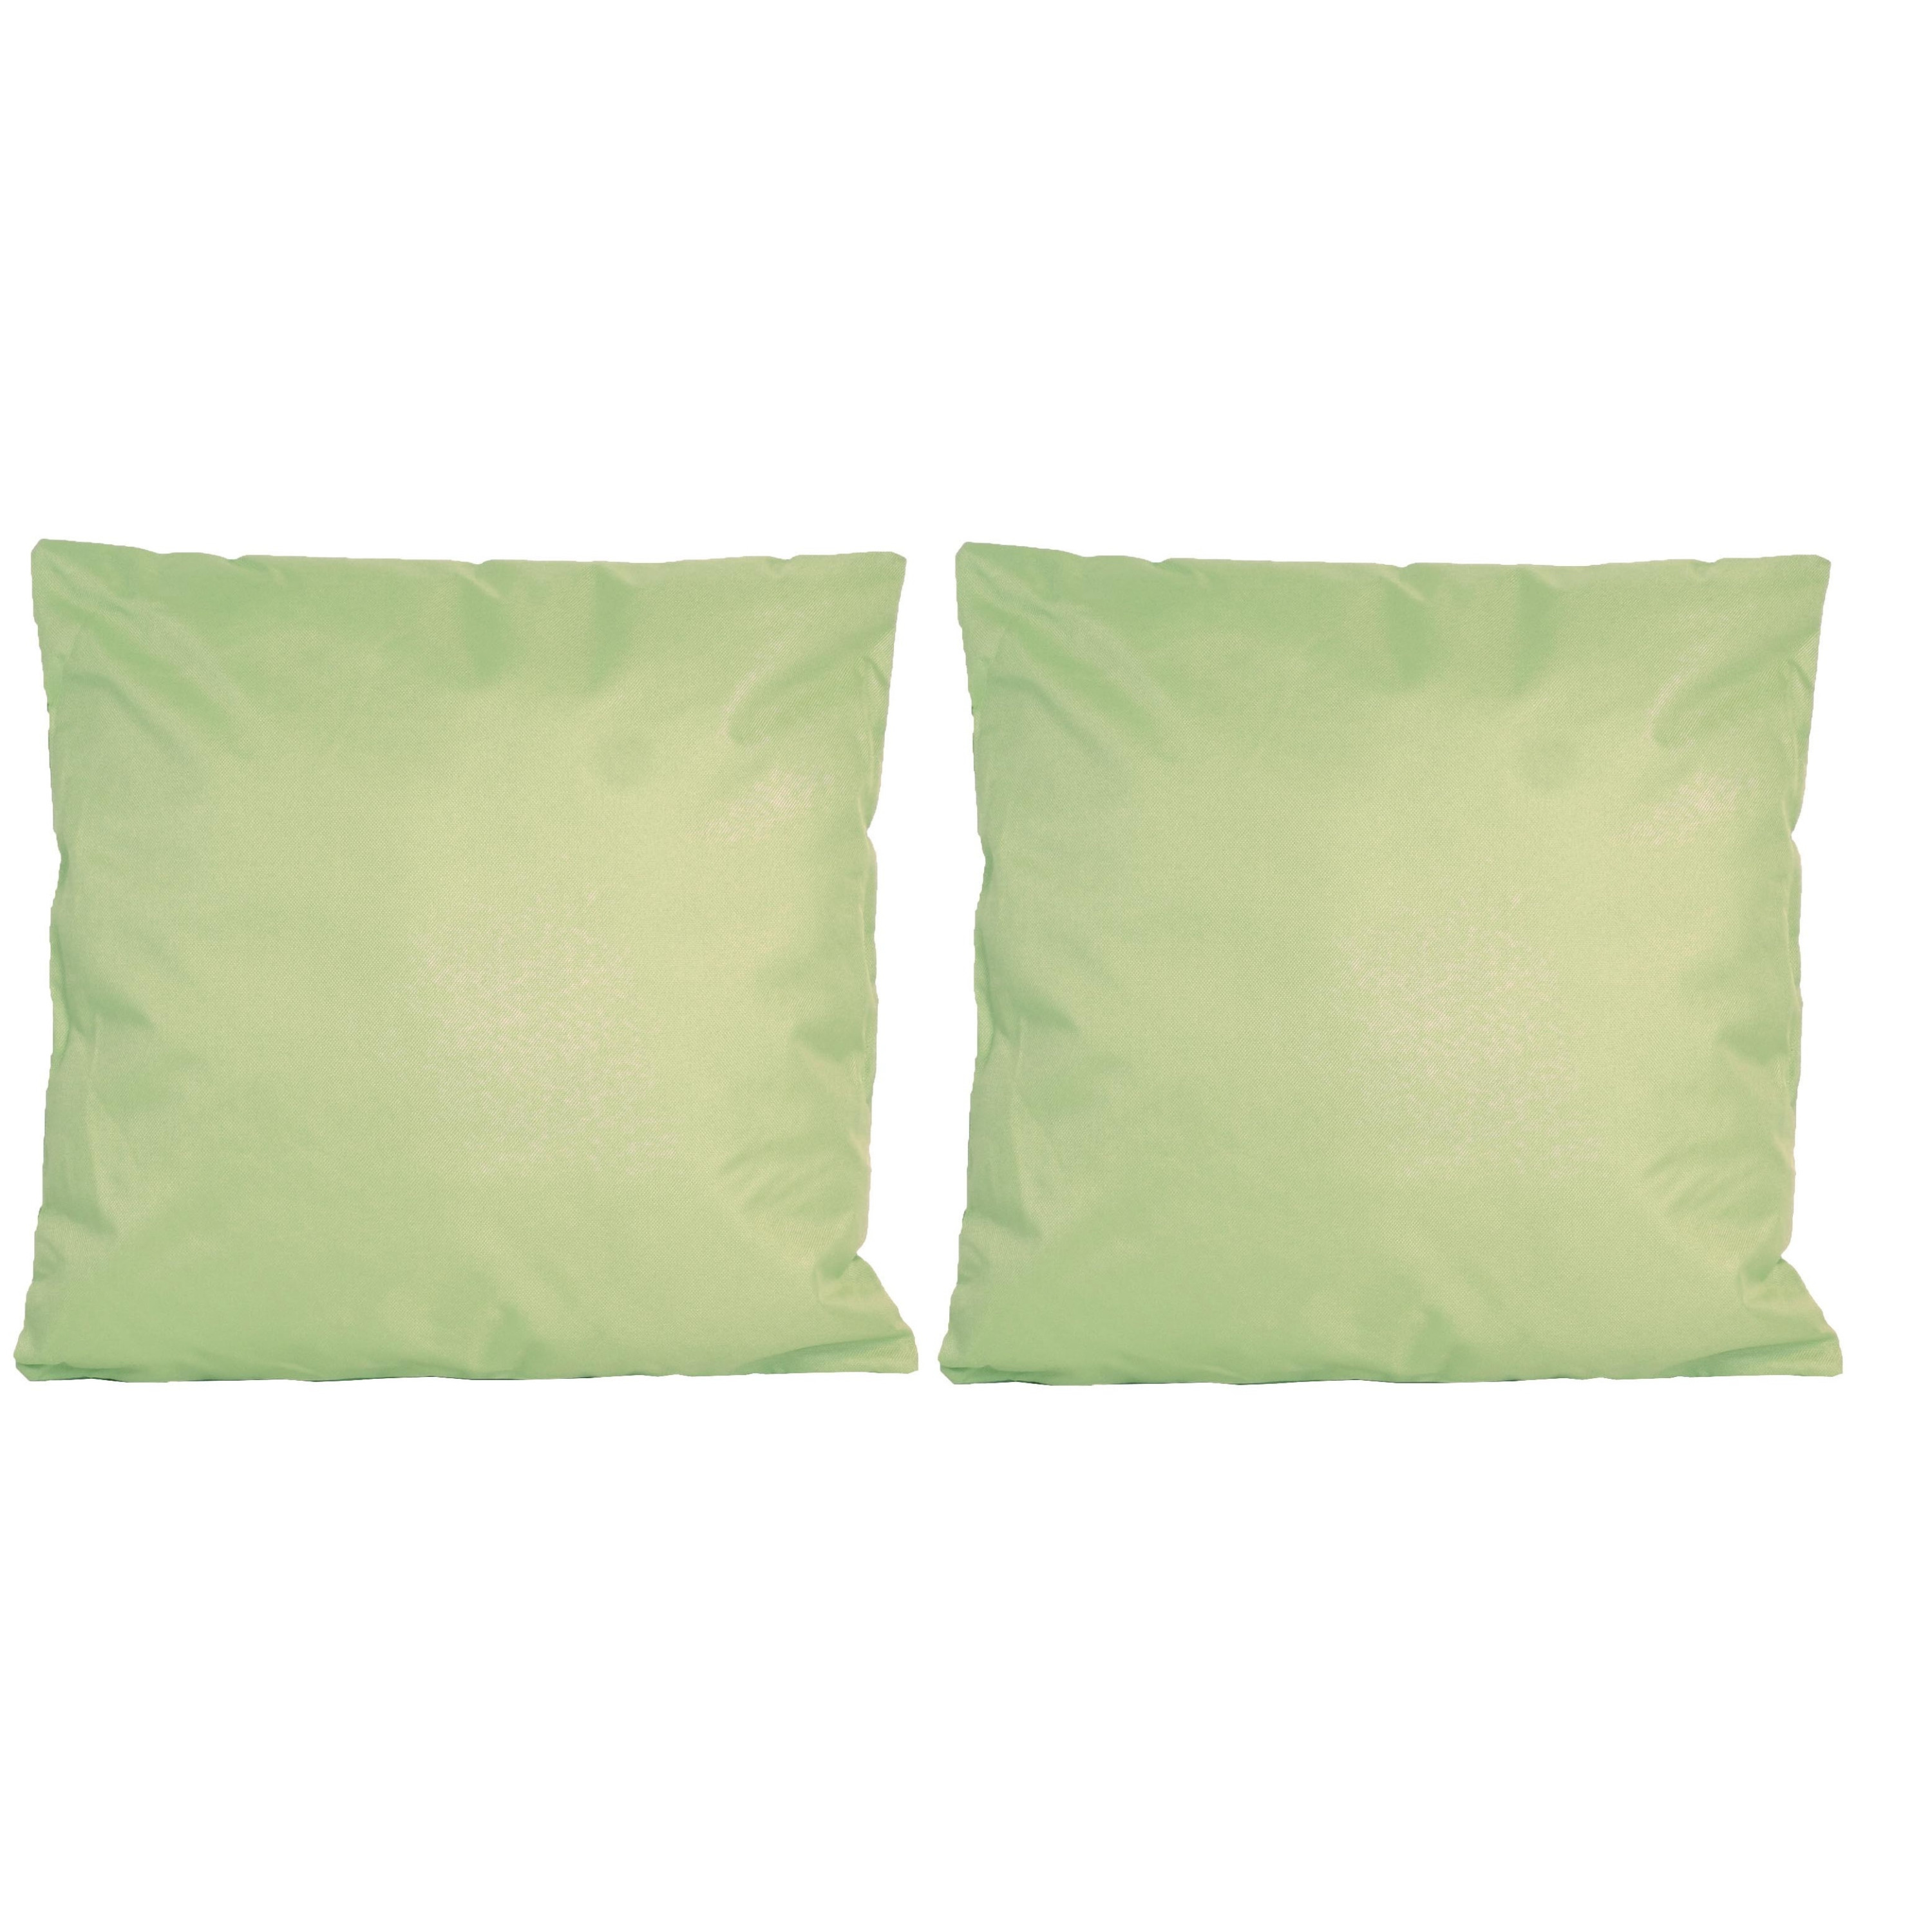 4x Bank-sier kussens voor binnen en buiten in de kleur mint groen 45 x 45 cm